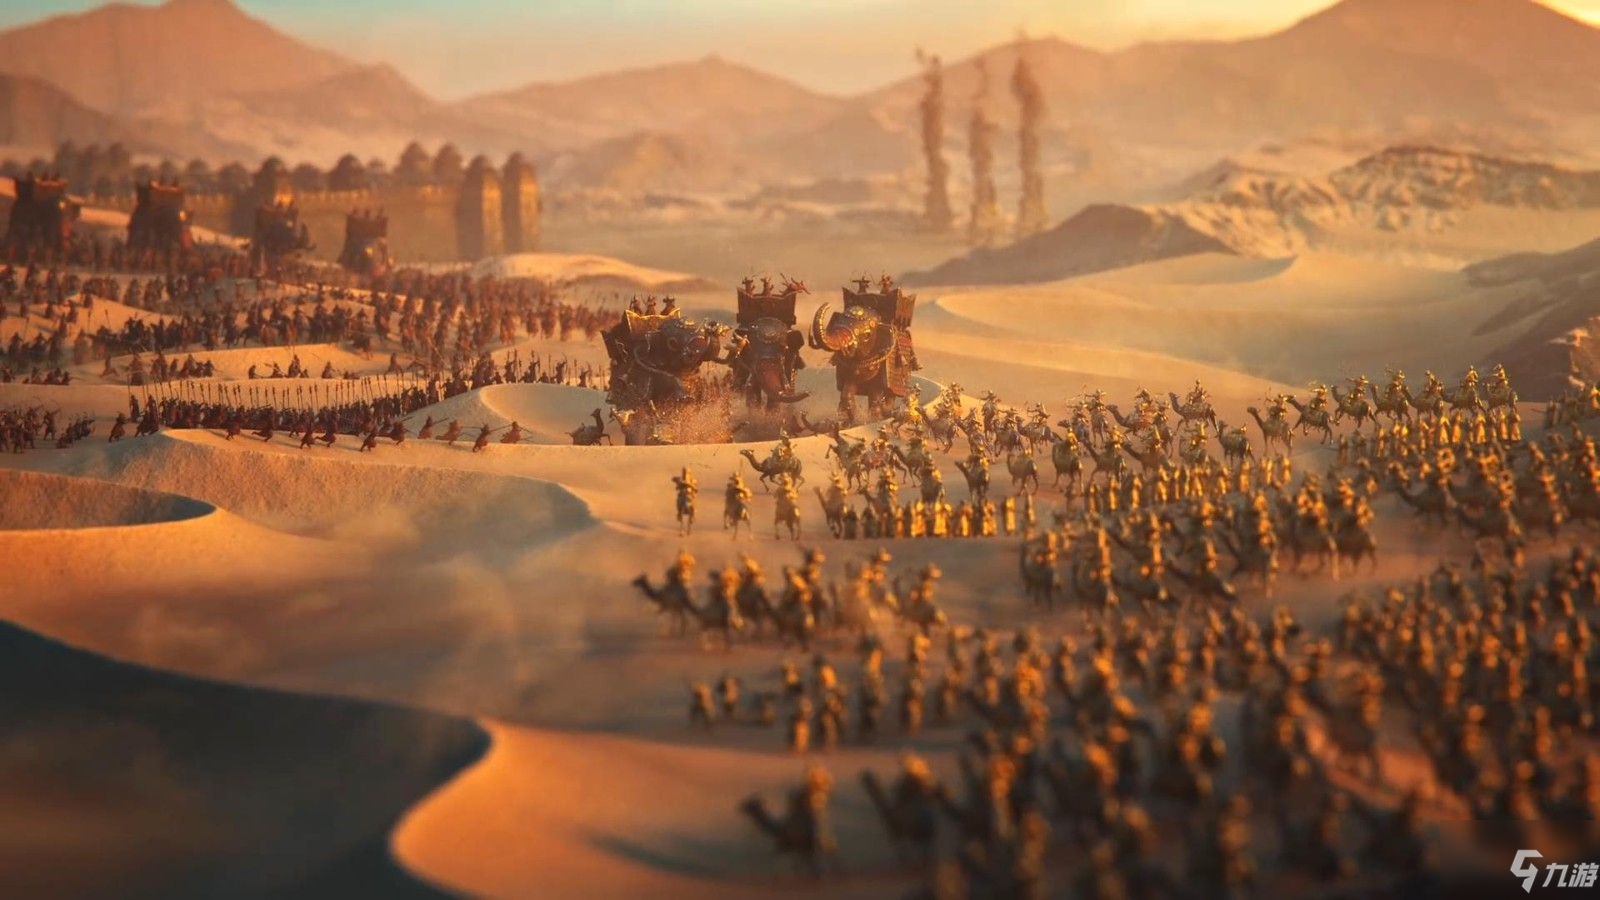 10月28日发售《帝国时代4》 真人版预告发布